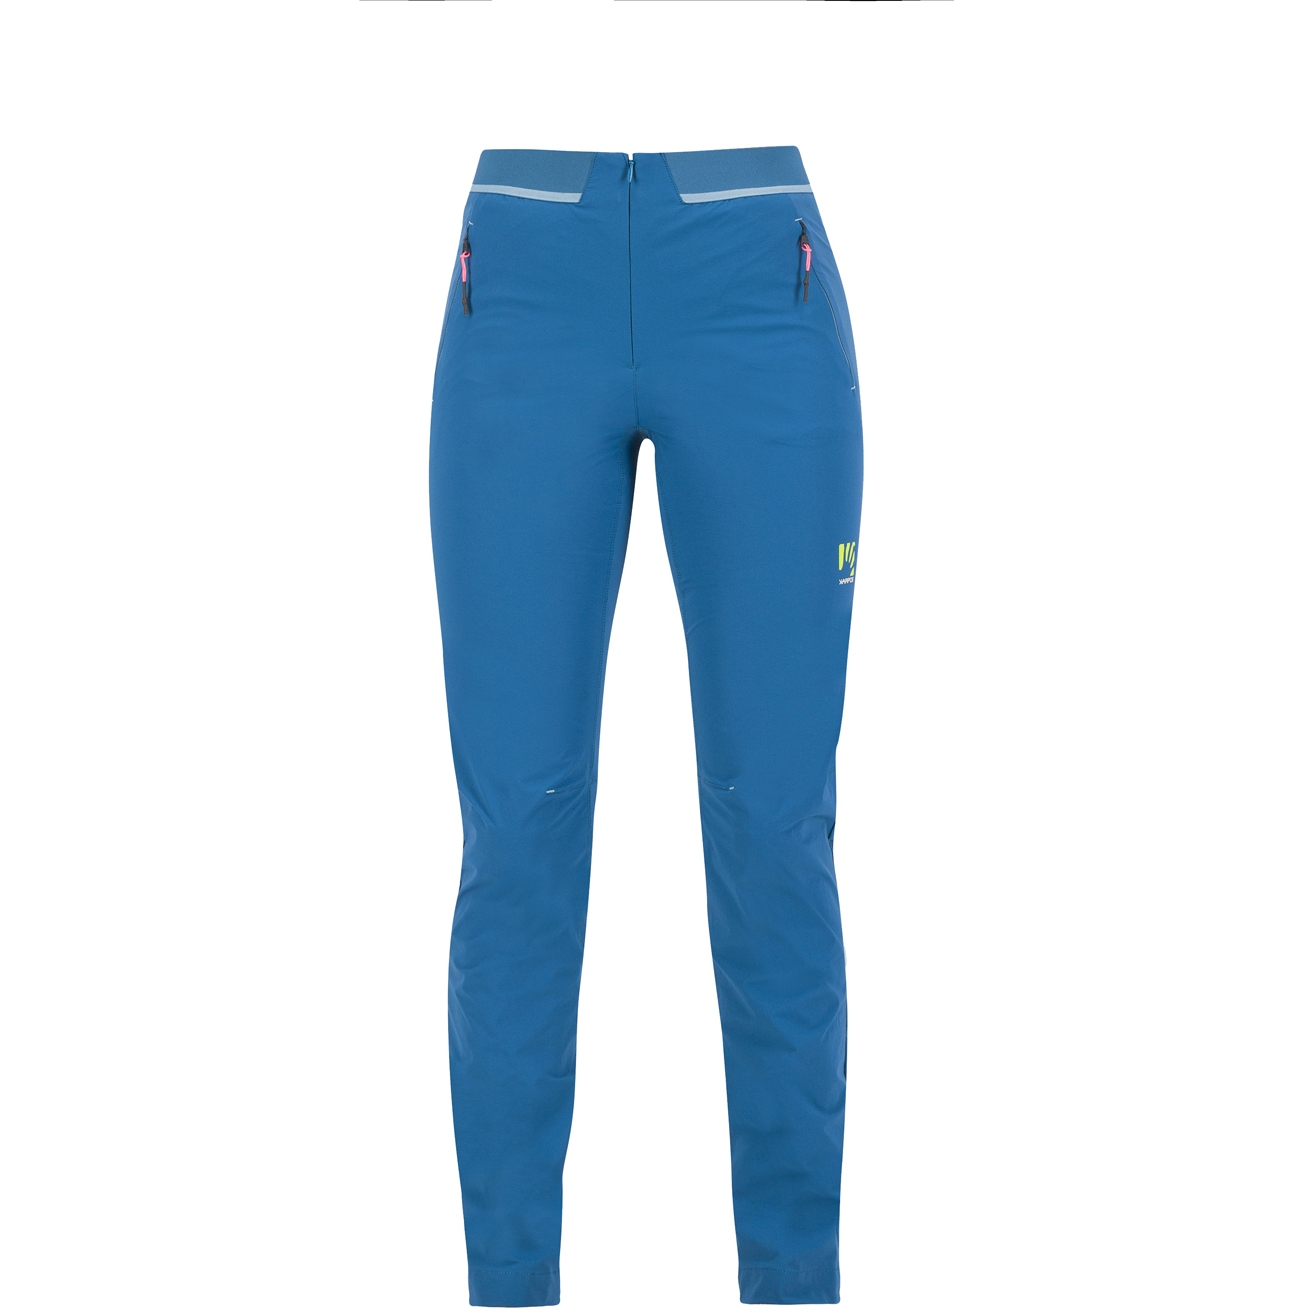 Picture of Karpos Tre Cime Pants Women - corsair/adriatic blue